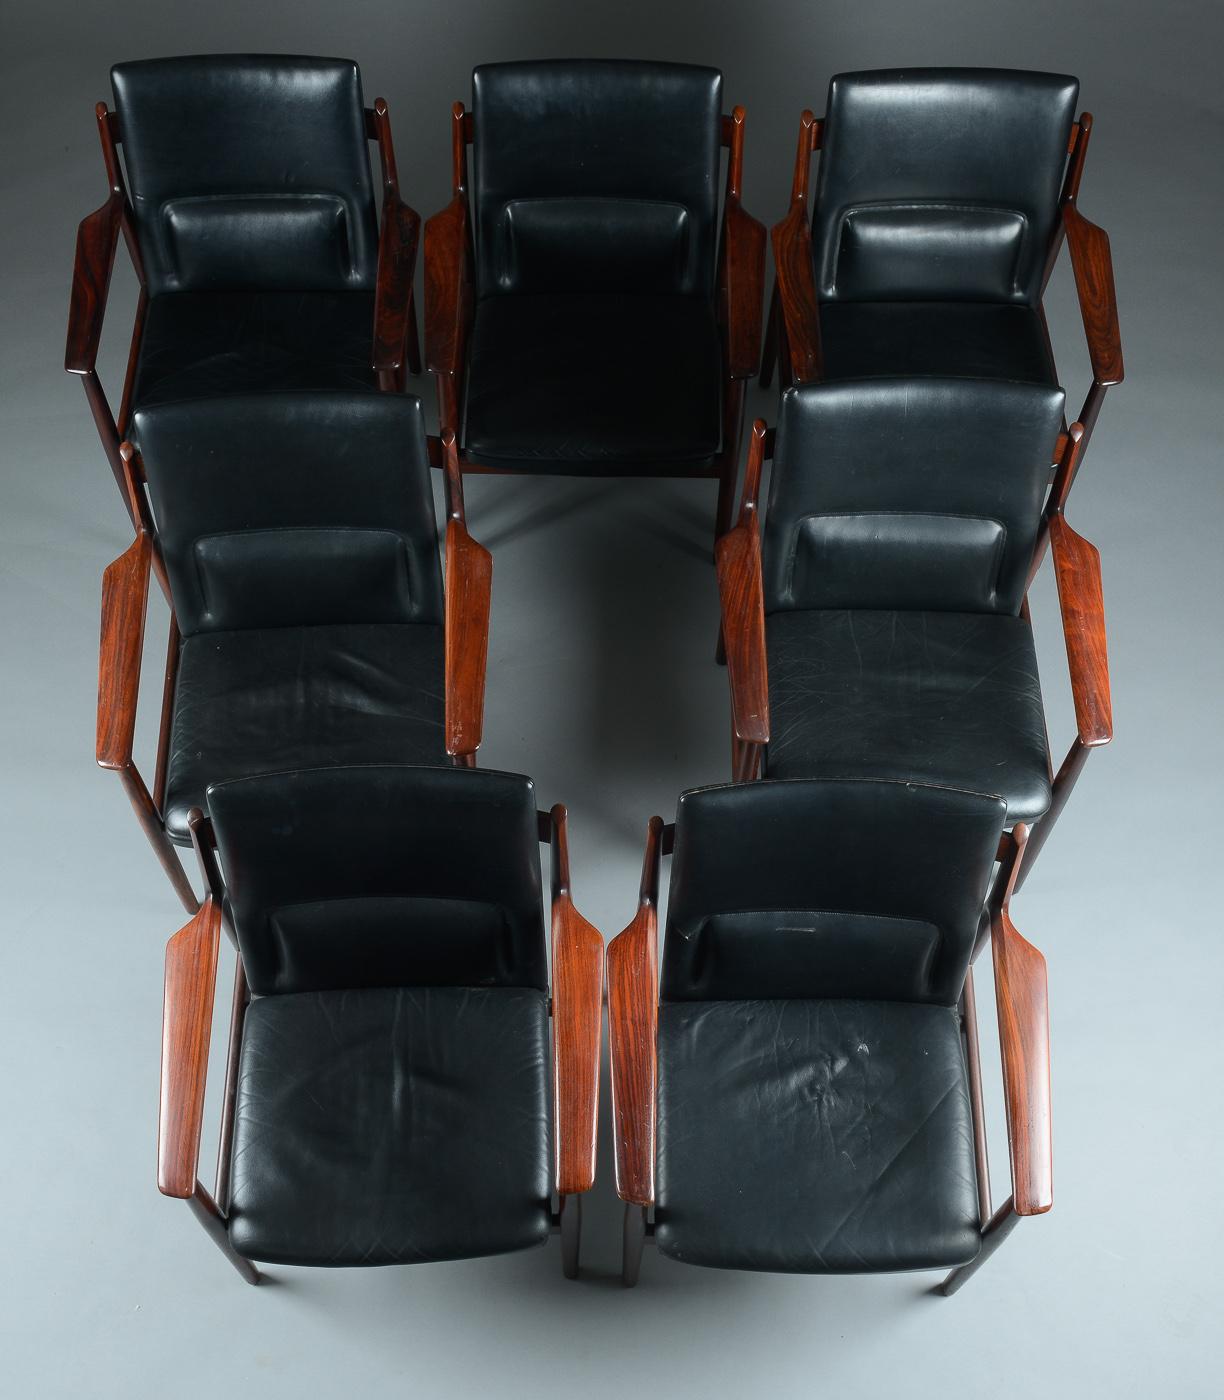 La photo représente un ensemble de sept fauteuils vendus à l'unité, conçus par Arne Vodder et fabriqués dans les années 1960 par Sibast. Le cuir noir d'origine est en bon état et présente des marques mineures d'usure normale. 

Un deuxième jeu de 4